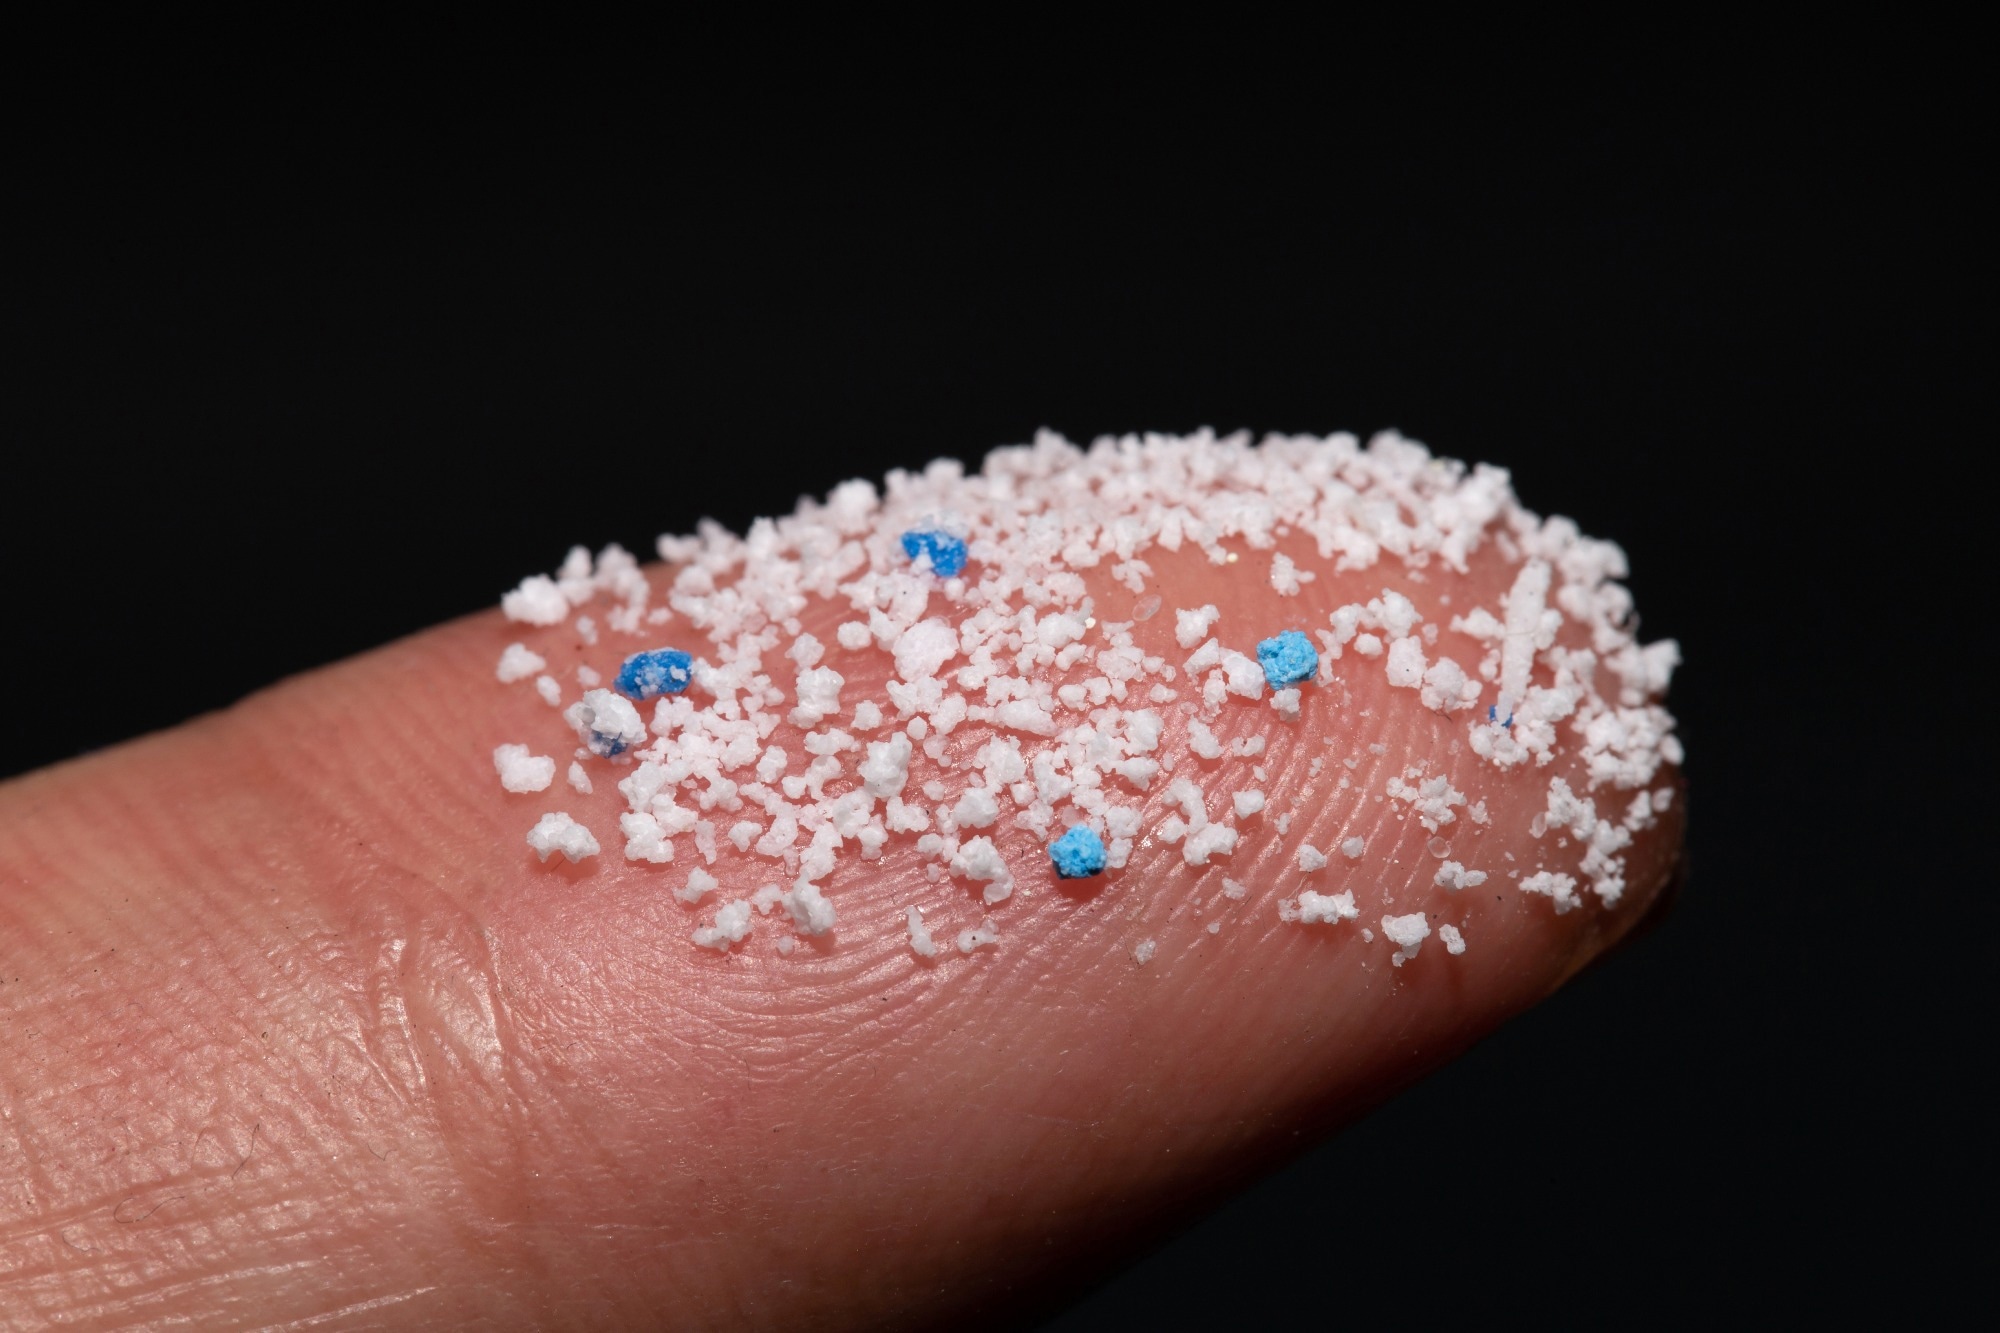 مطالعه: میکروبیوتای روده، کلیدی برای درک پیامدهای سلامت میکرو (نانو) پلاستیک ها و تجزیه زیستی آنها.  اعتبار تصویر: chayanuphol / Shutterstock